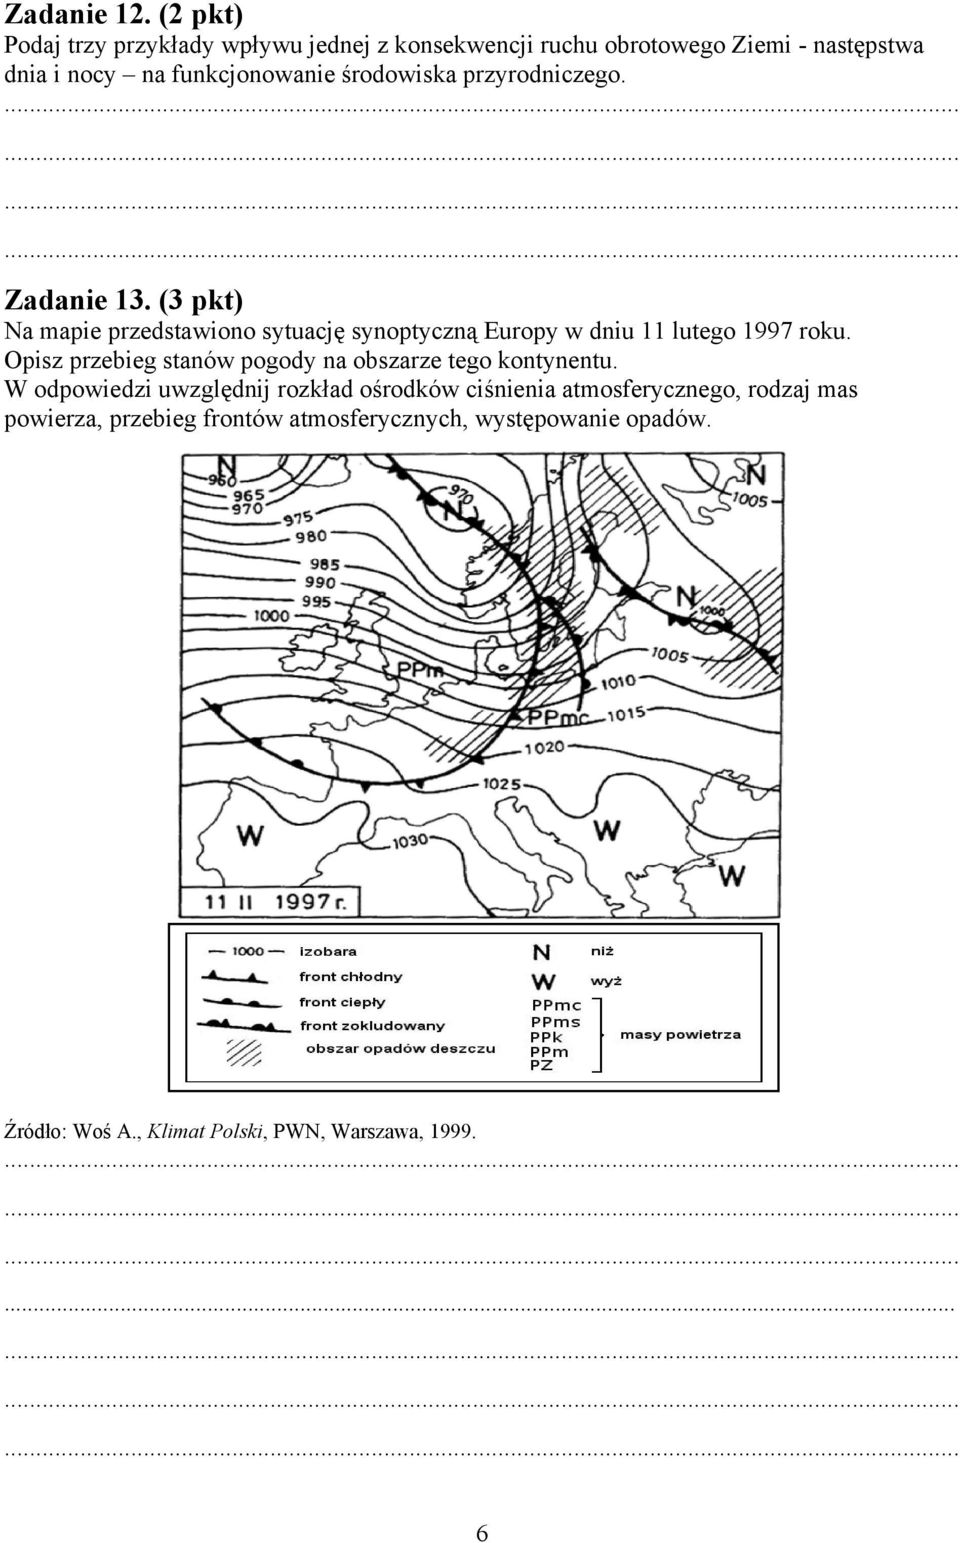 środowiska przyrodniczego. Zadanie 13. (3 pkt) Na mapie przedstawiono sytuację synoptyczną Europy w dniu 11 lutego 1997 roku.